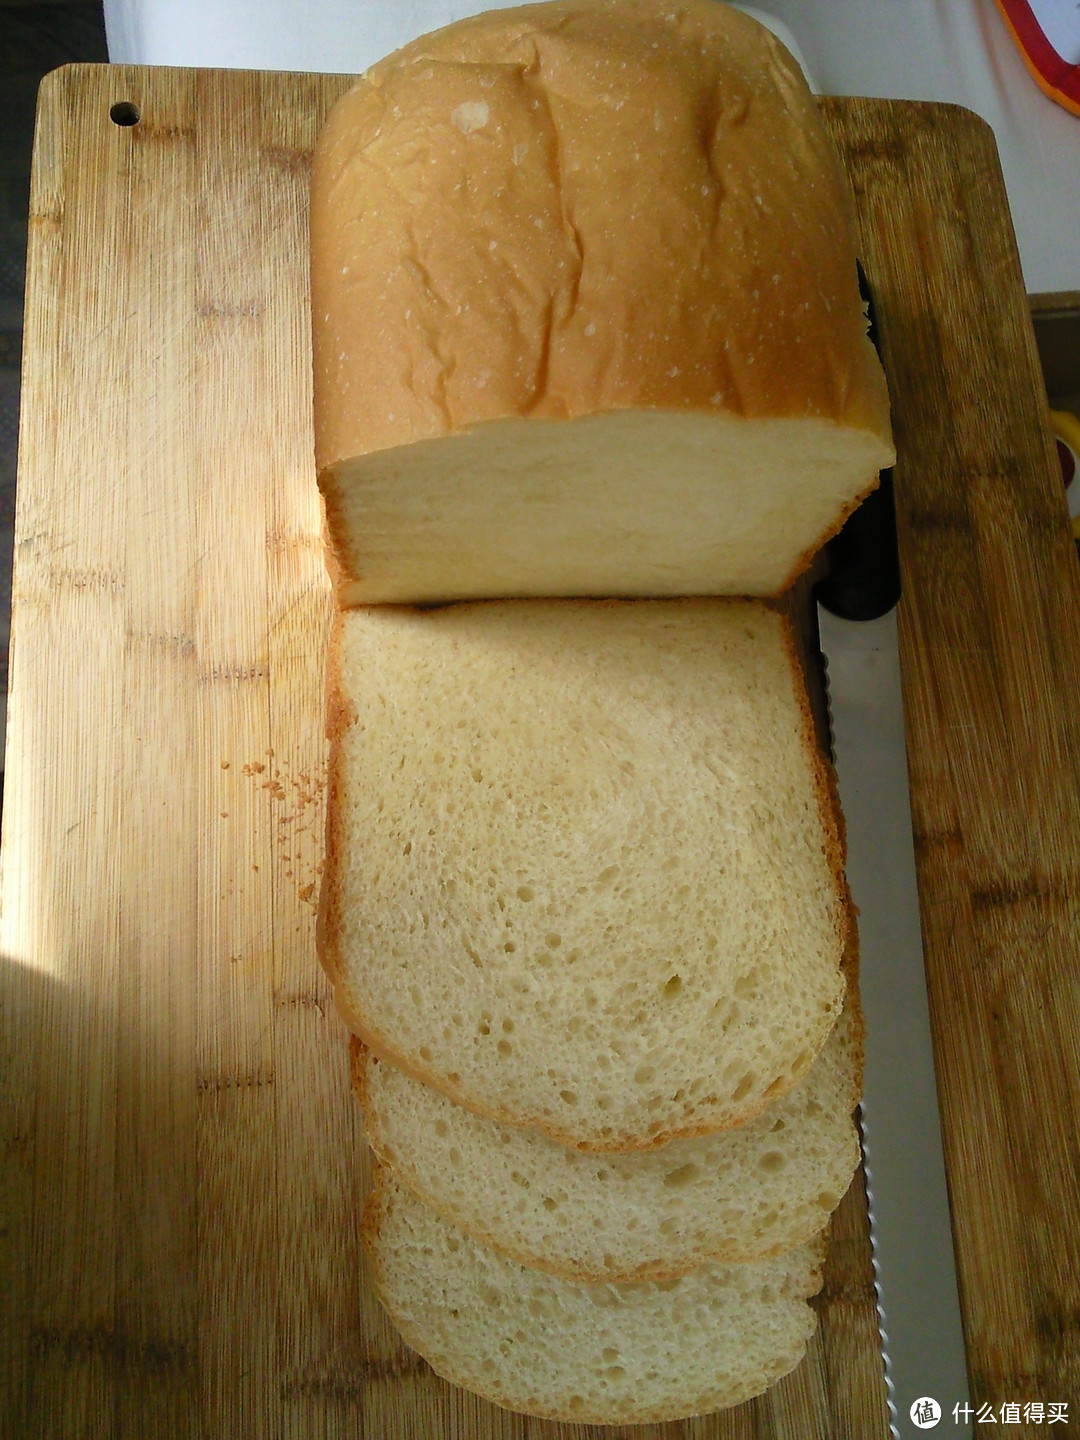 自制面包教程 连载三：甜面包的详细制作过程